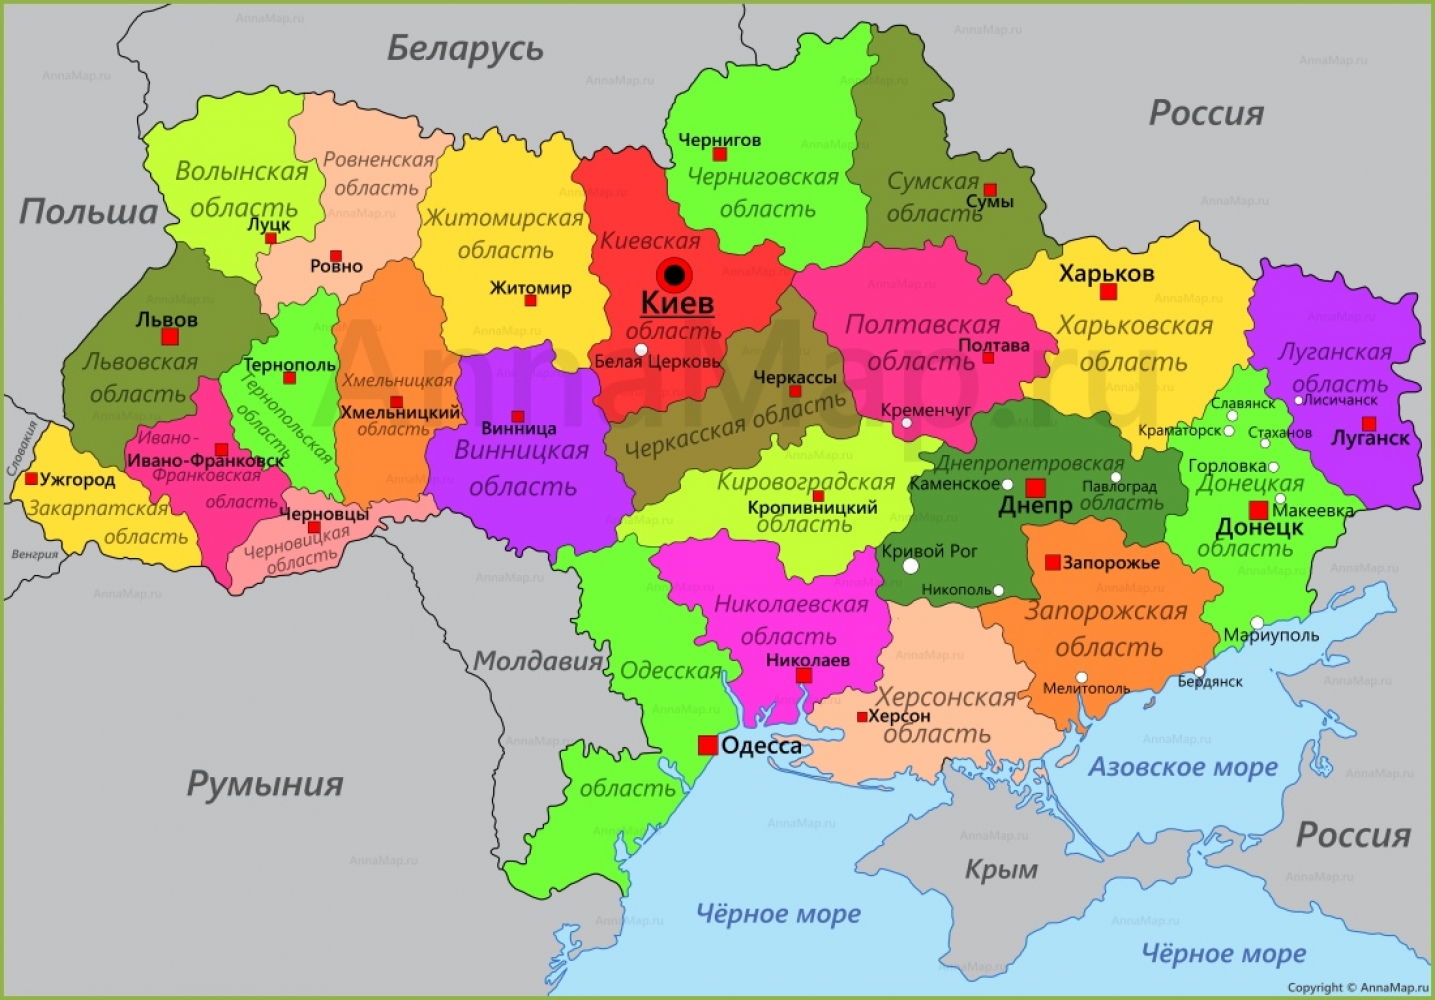 Заявлено о провозглашении государства Федеративная Республика Украина